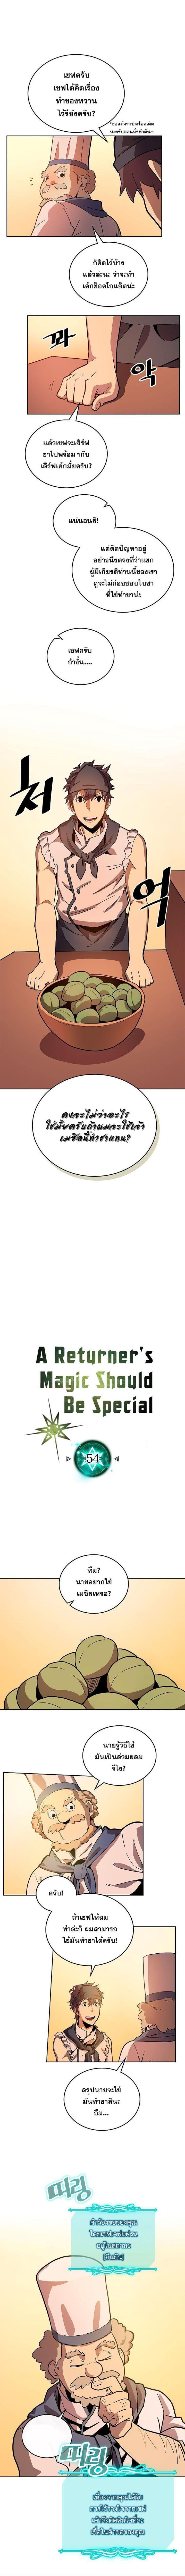 อ่าน A Returner’s Magic Should Be Special